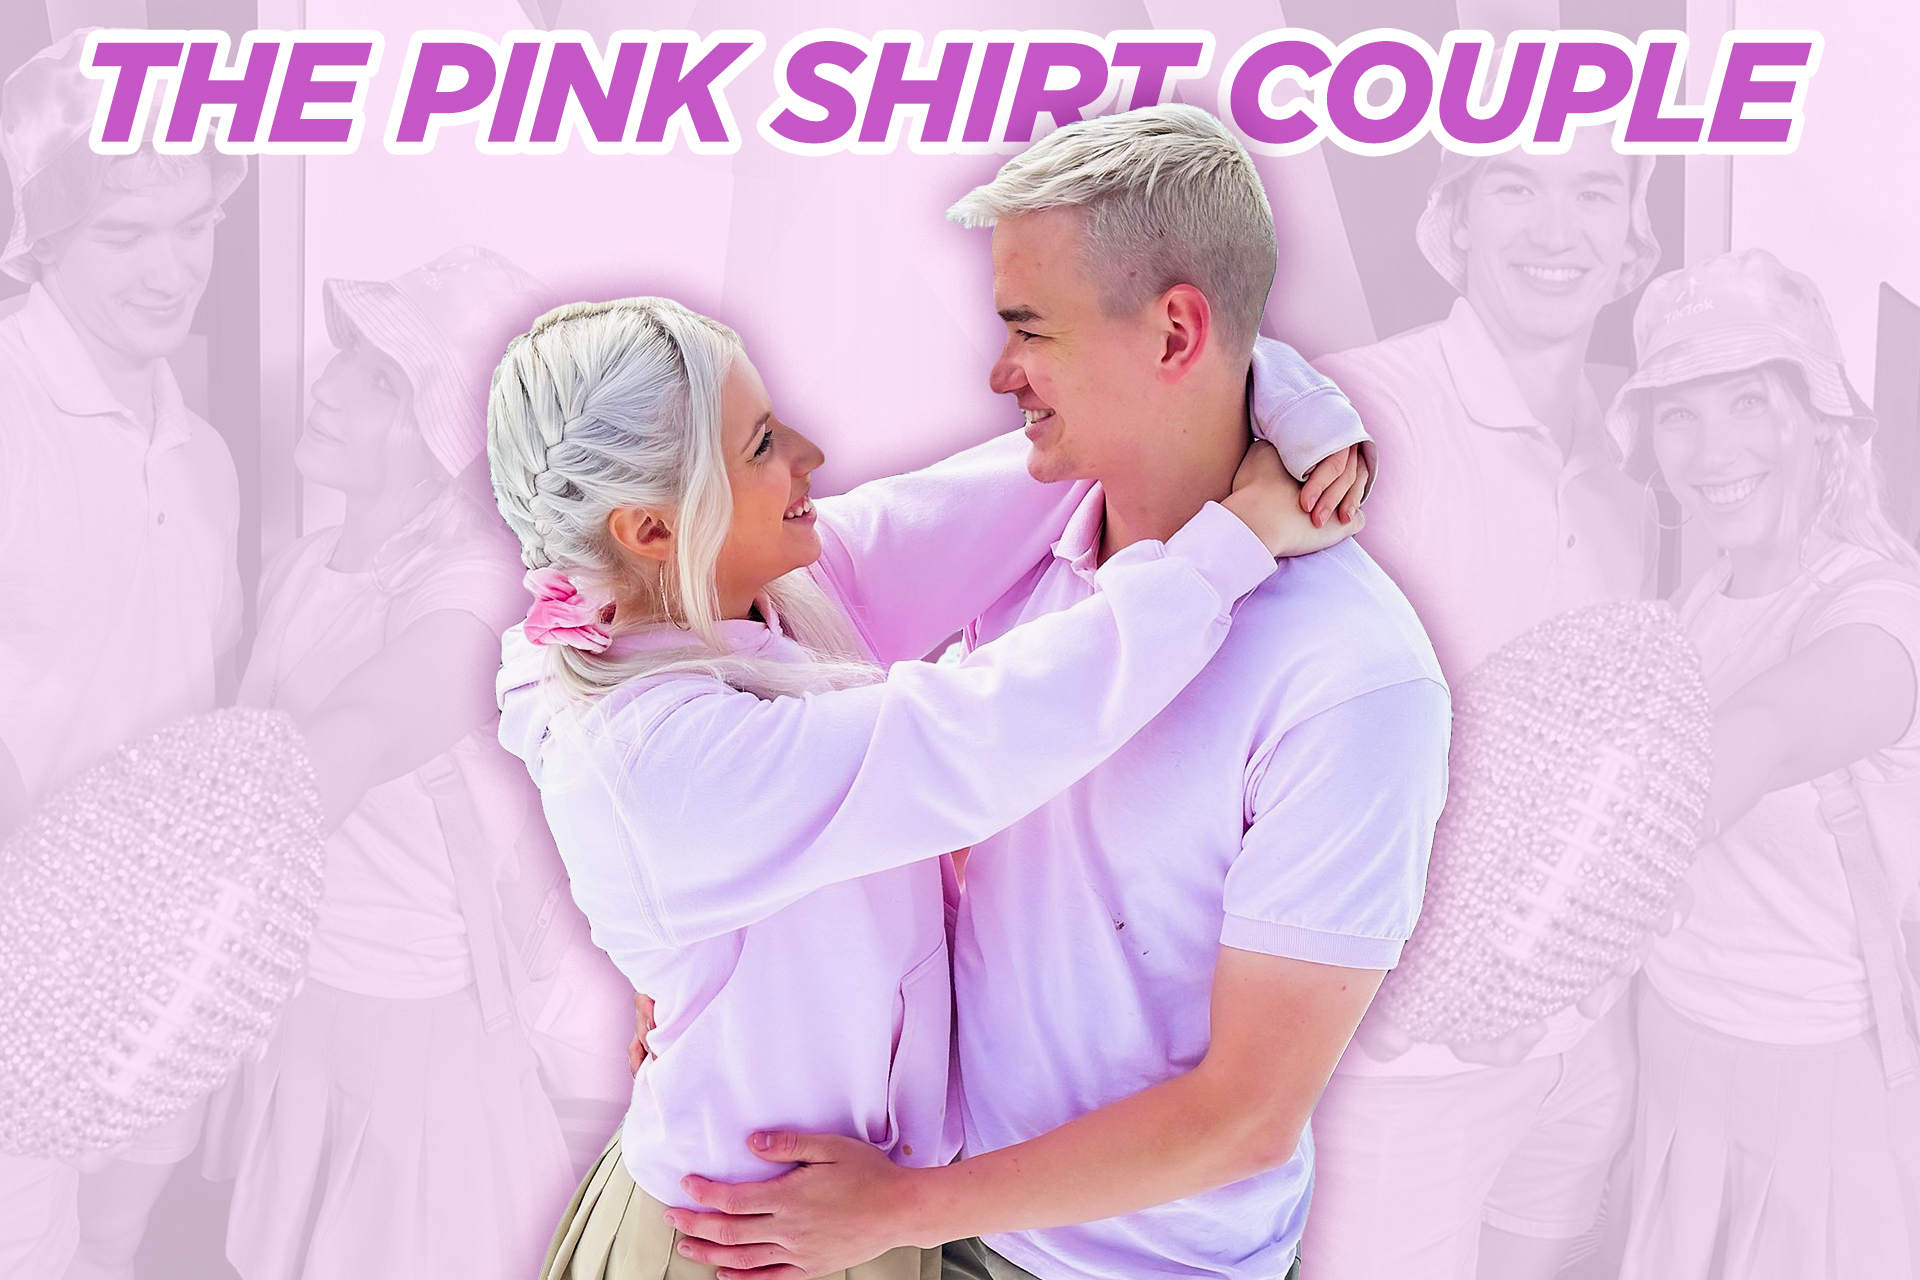 Pink Shirt Couple phát triển nhanh chóng trở thành một trong những creators hàng đầu tại Mỹ